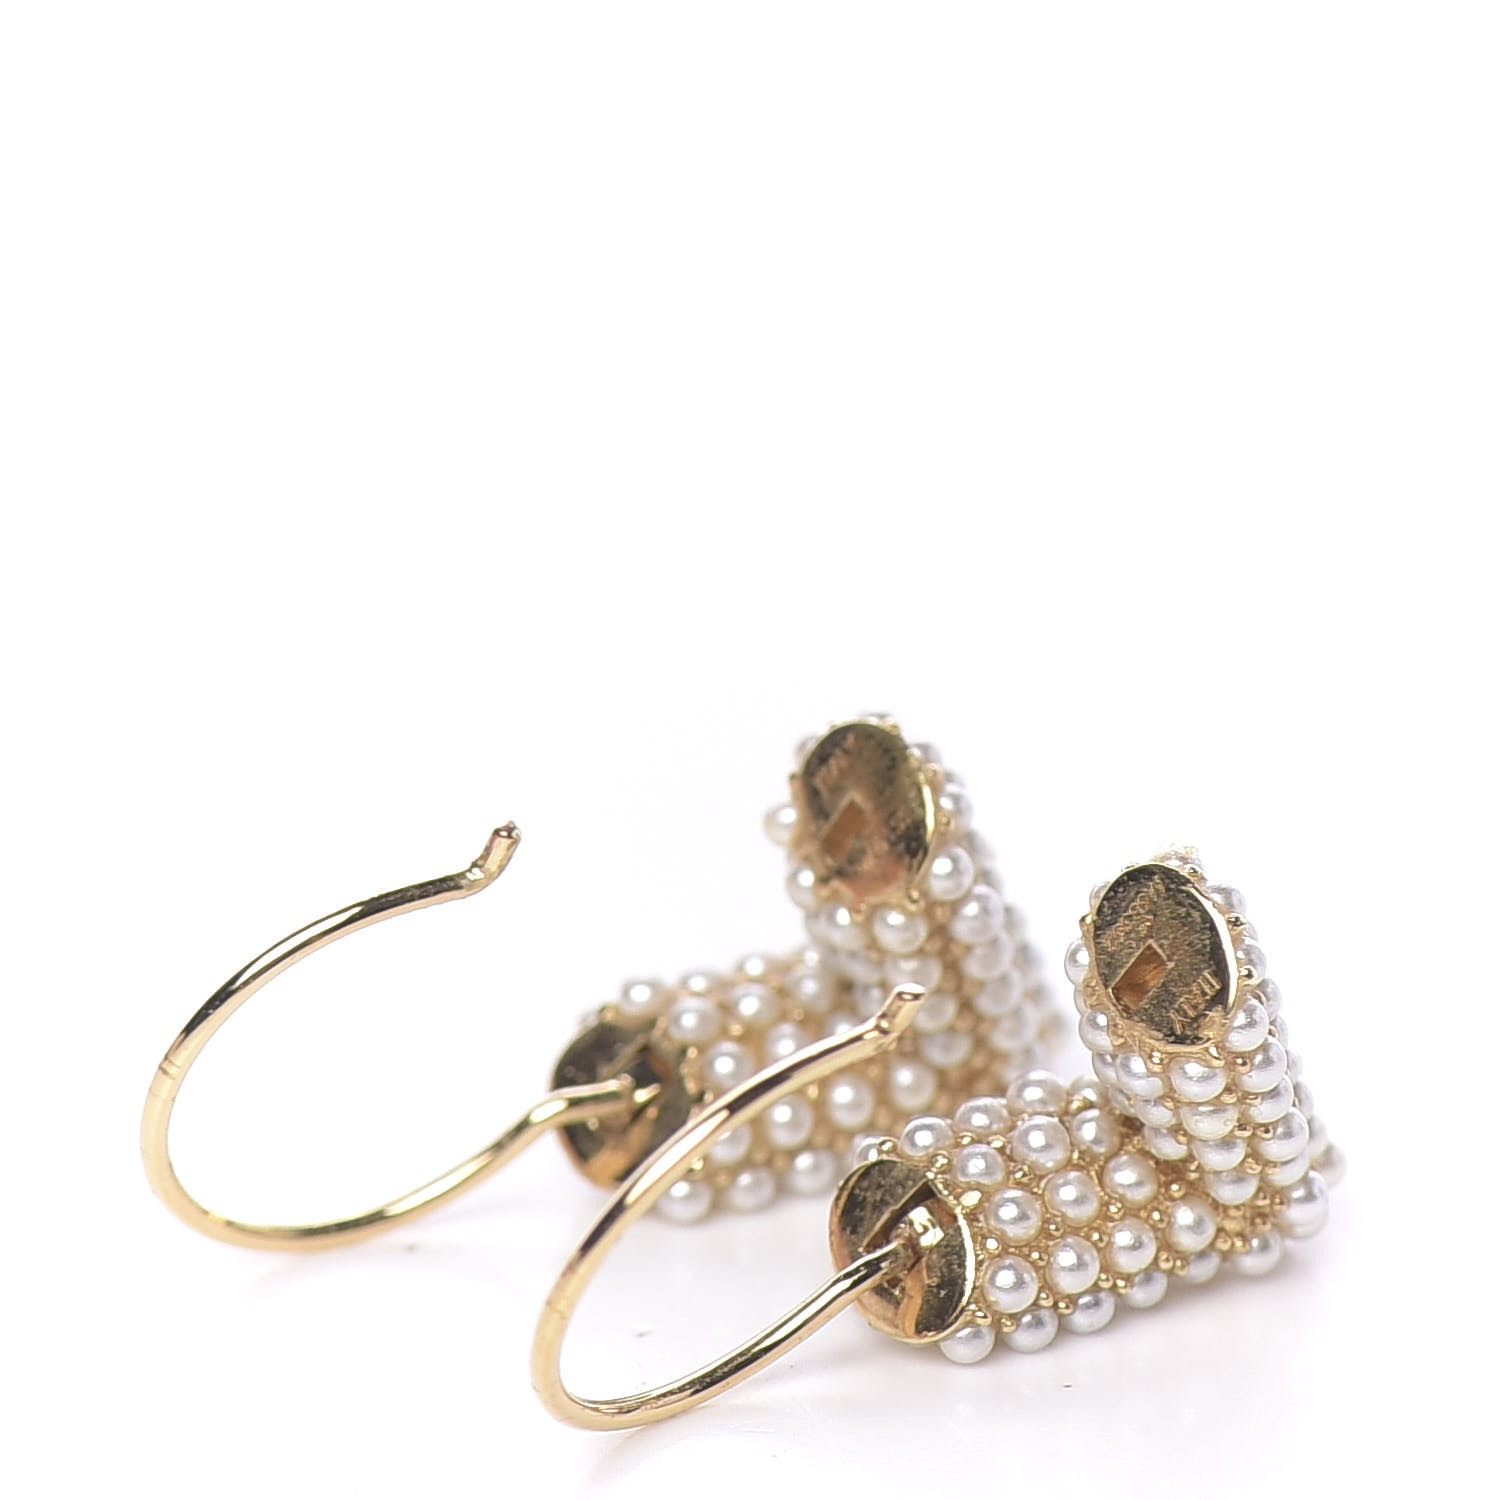 Auth Louis Vuitton Embossed LV Monogram Hoop Earring Pink Gold